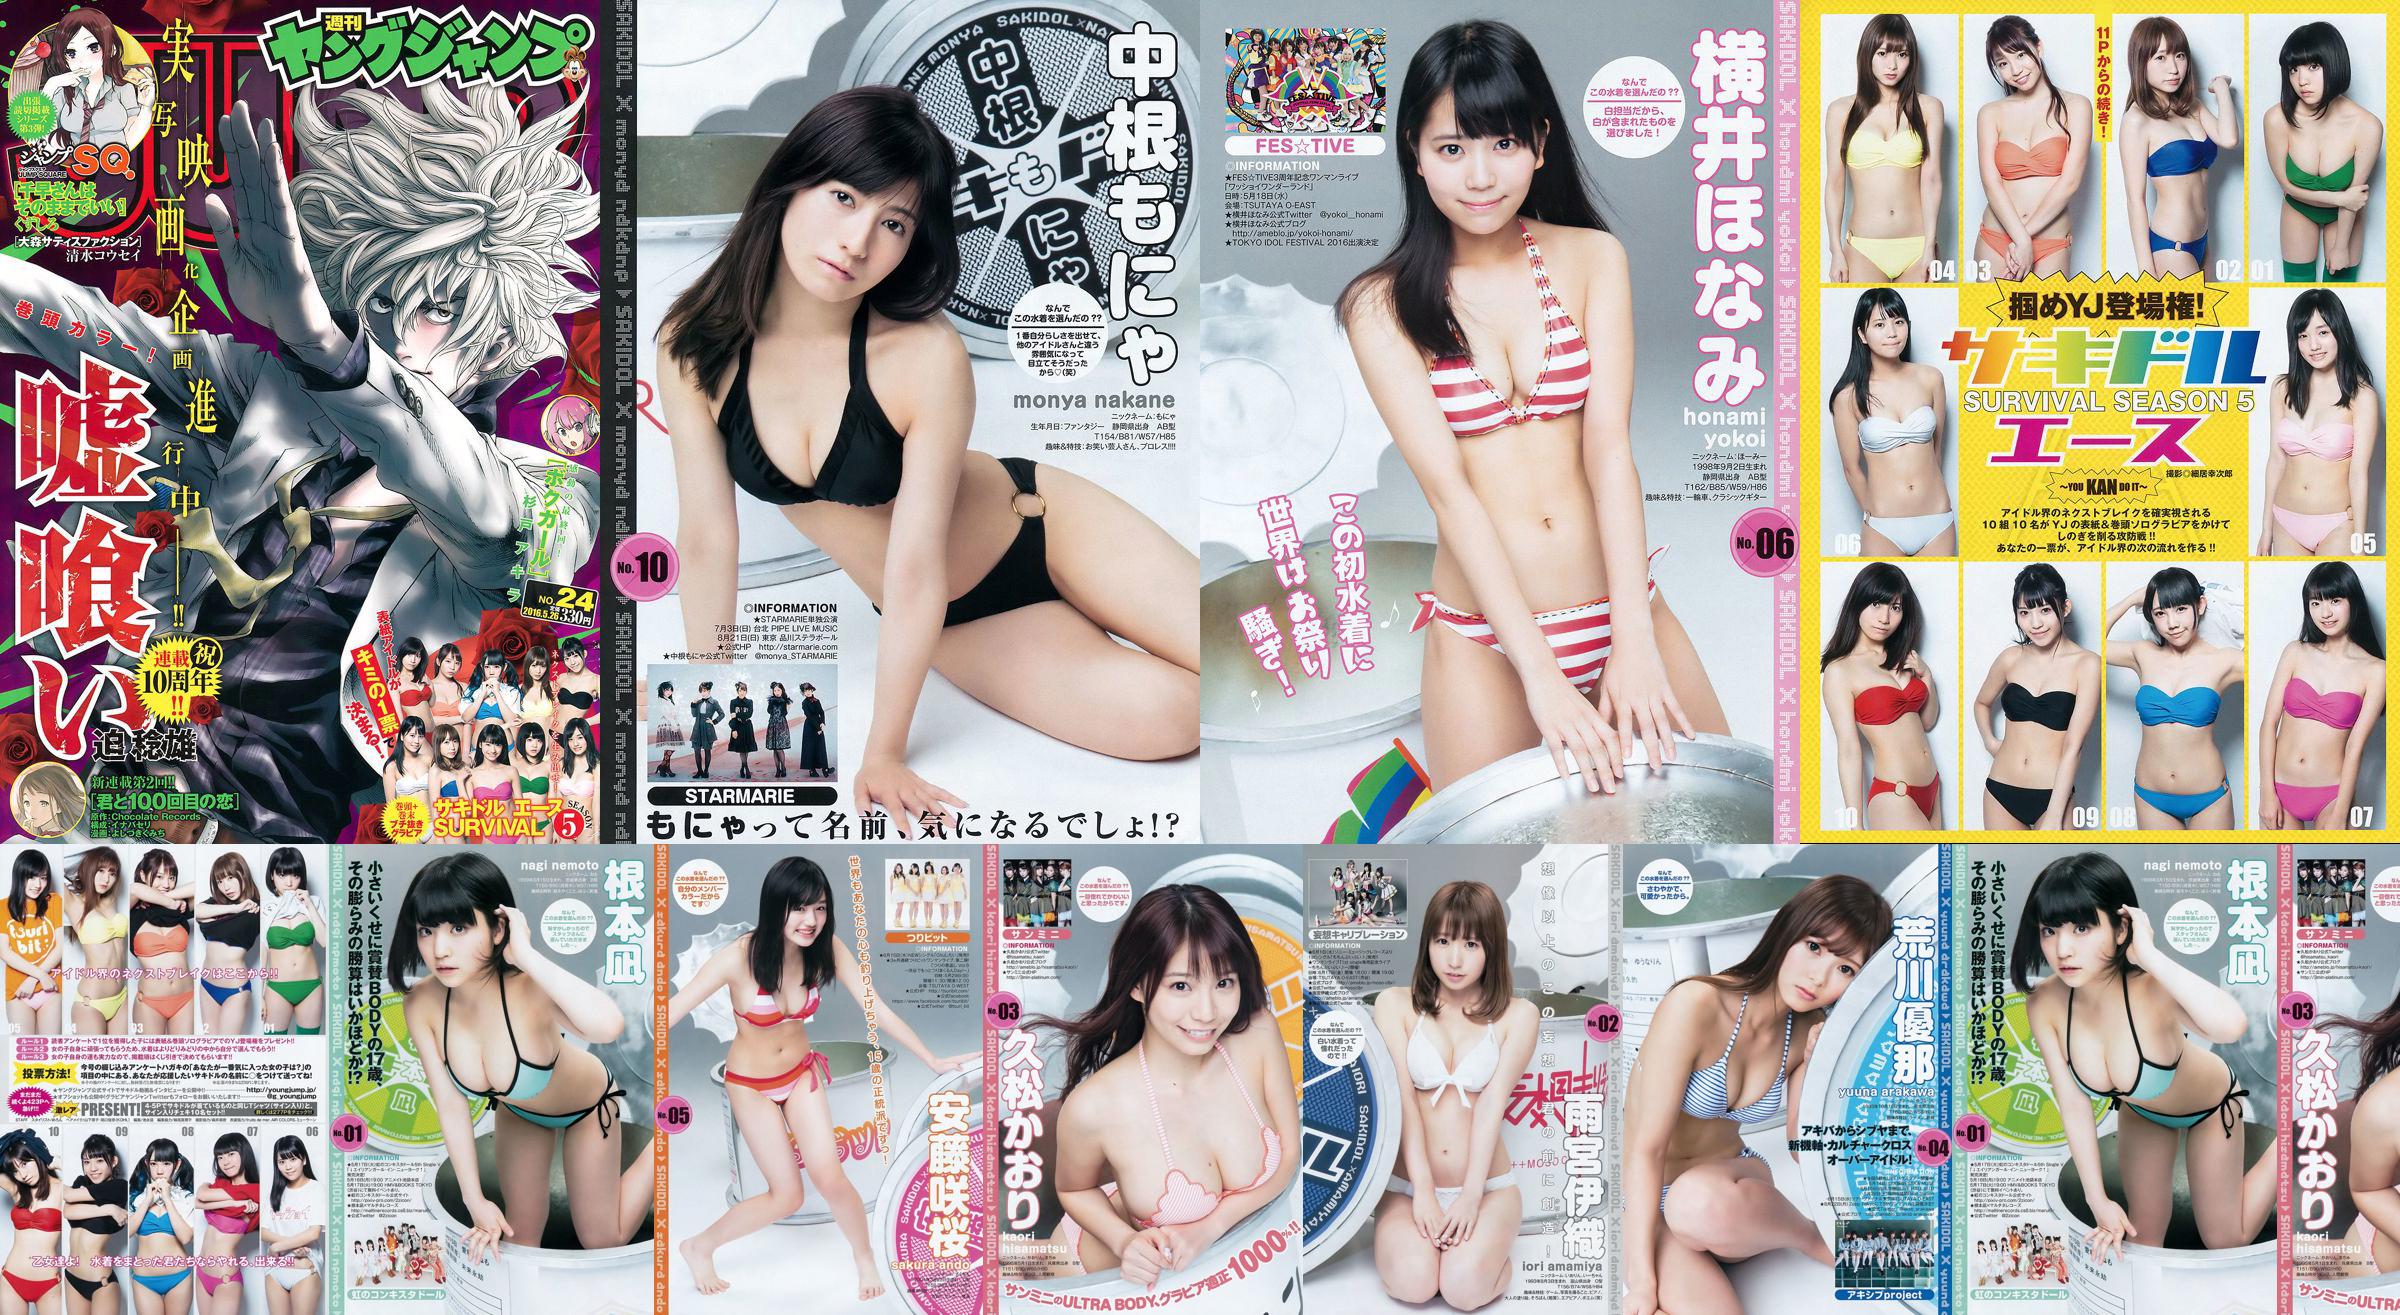 サキドルエースSURVIVAL SEASON5 "掴めYJ debut! ~YOU KAN DO IT~" [Weekly Young Jump] นิตยสารภาพถ่าย No.24 ประจำปี 2559 No.f8c1f9 หน้า 1